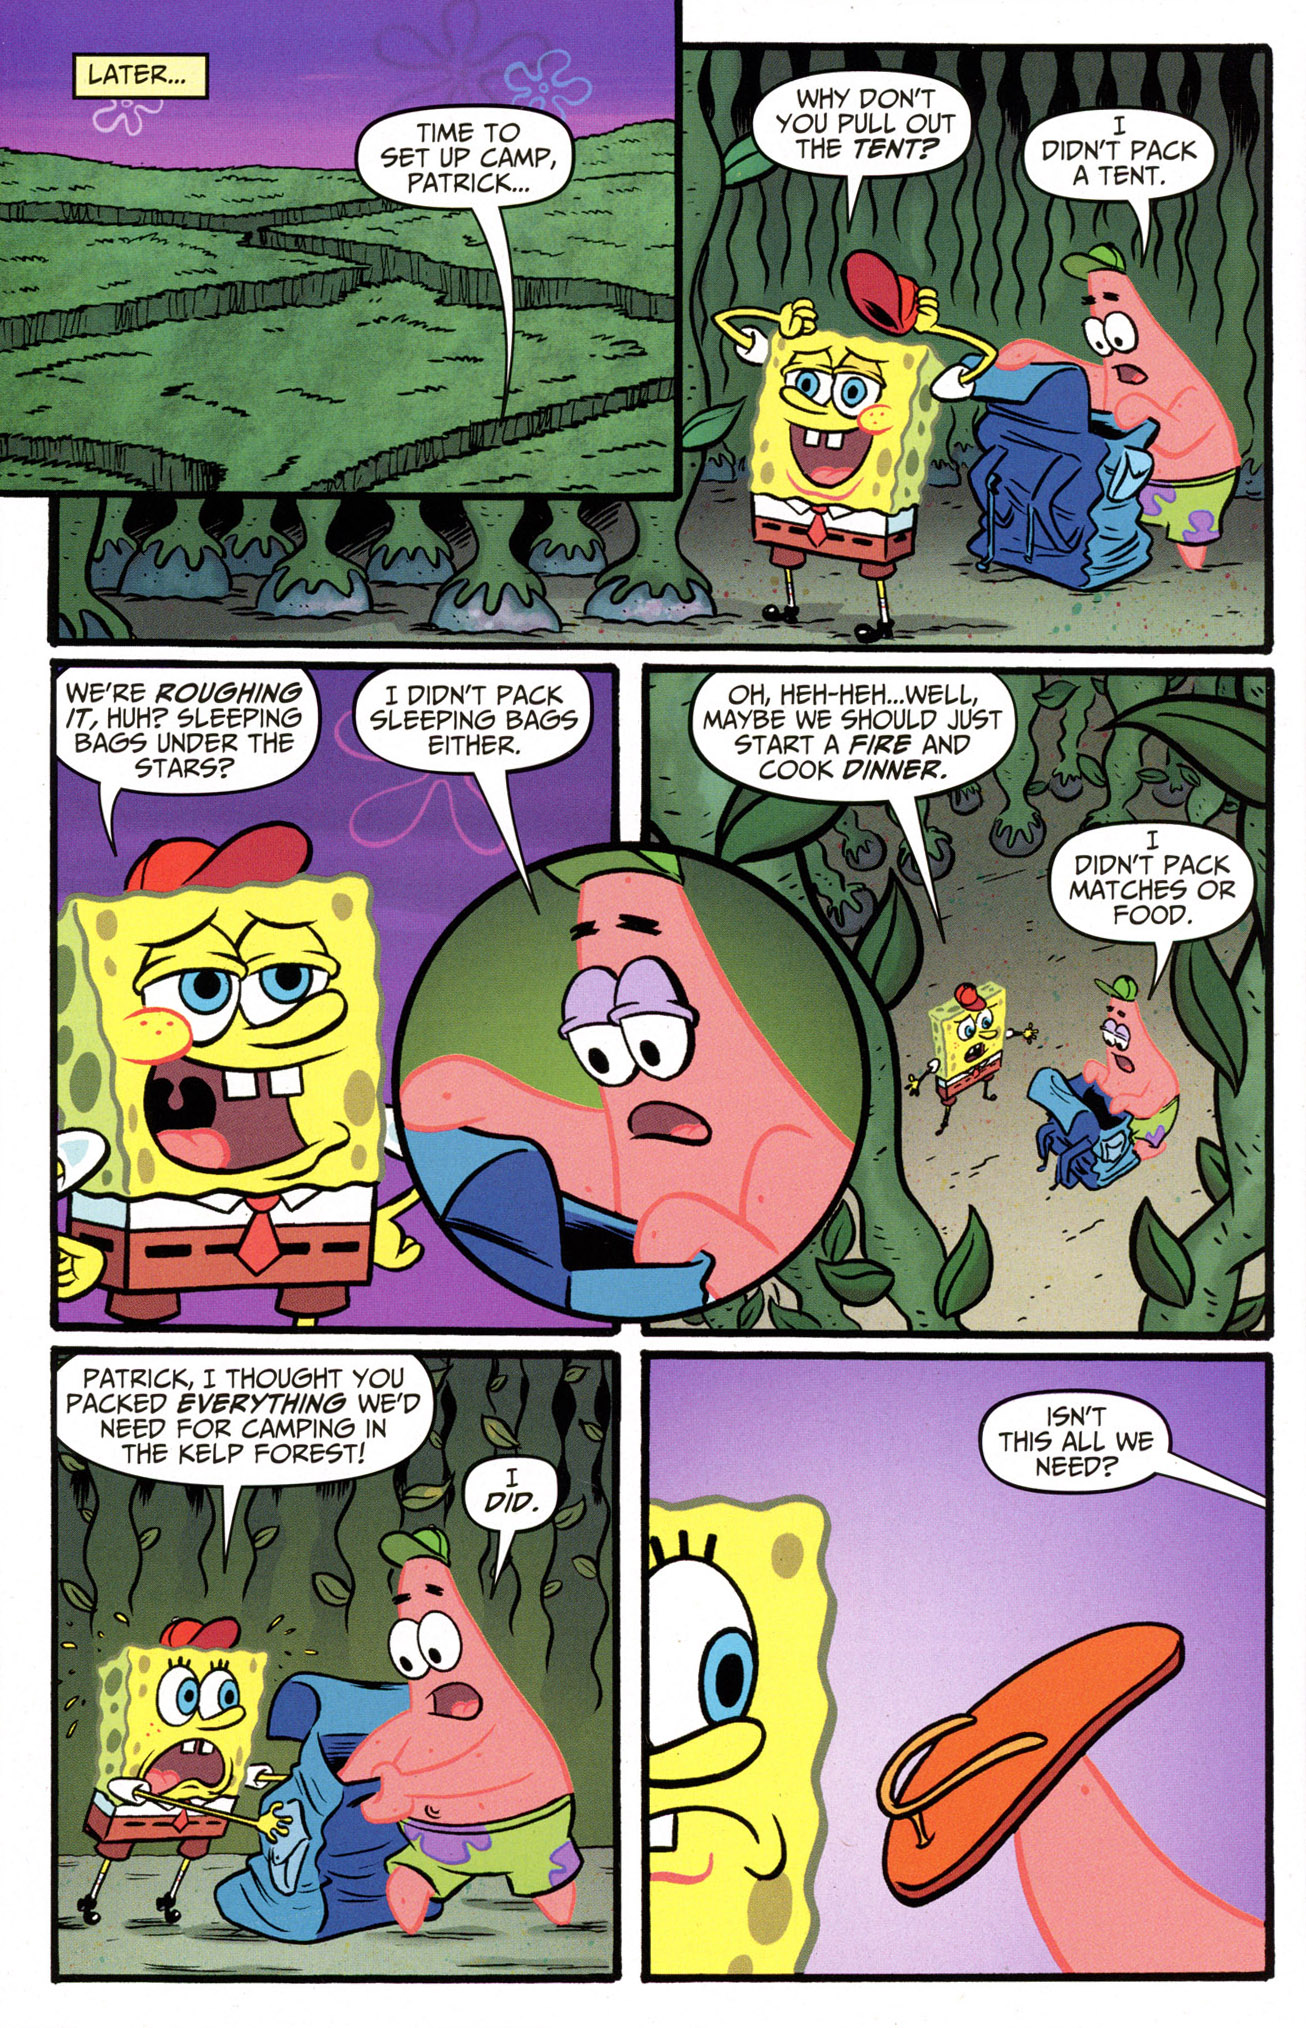 Jual Film Komik Spongebob Squarepants Murah Langka Lengkap Gambar